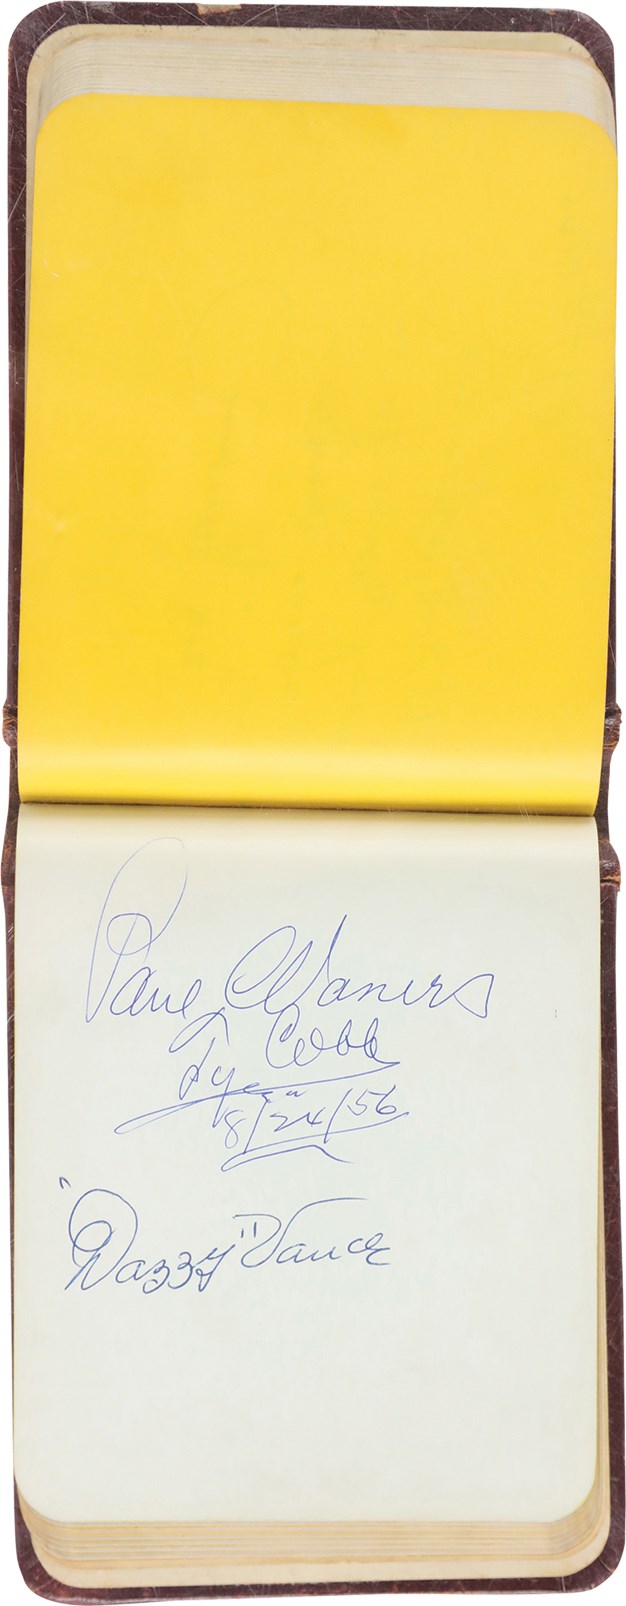 Baseball Autographs - Marconi's (Baltimore) Restaurant Autograph Album Guest Book Signed by 70 Plus JSA